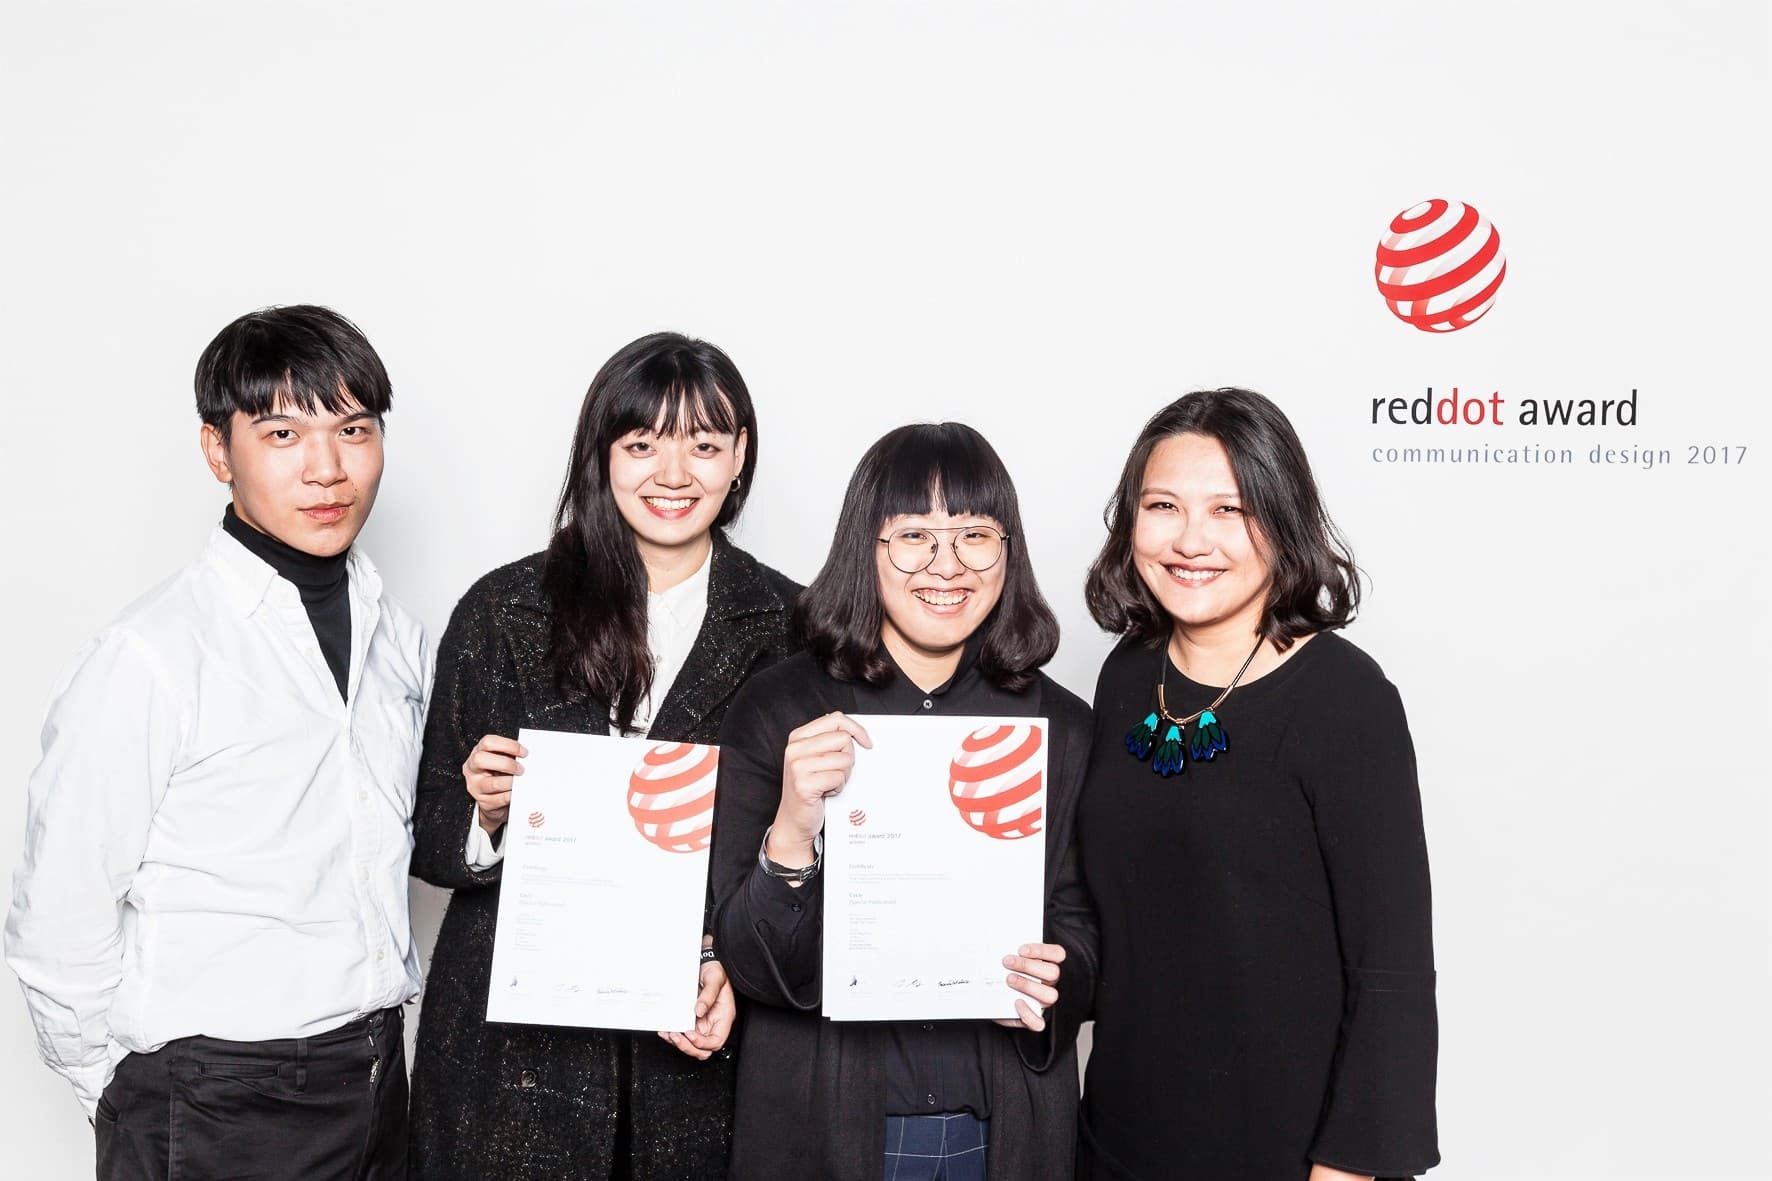 (左2起)獲獎學生韓瑜、童園婷及指導老師曾薰誼等獲紅點設計獎師生合影